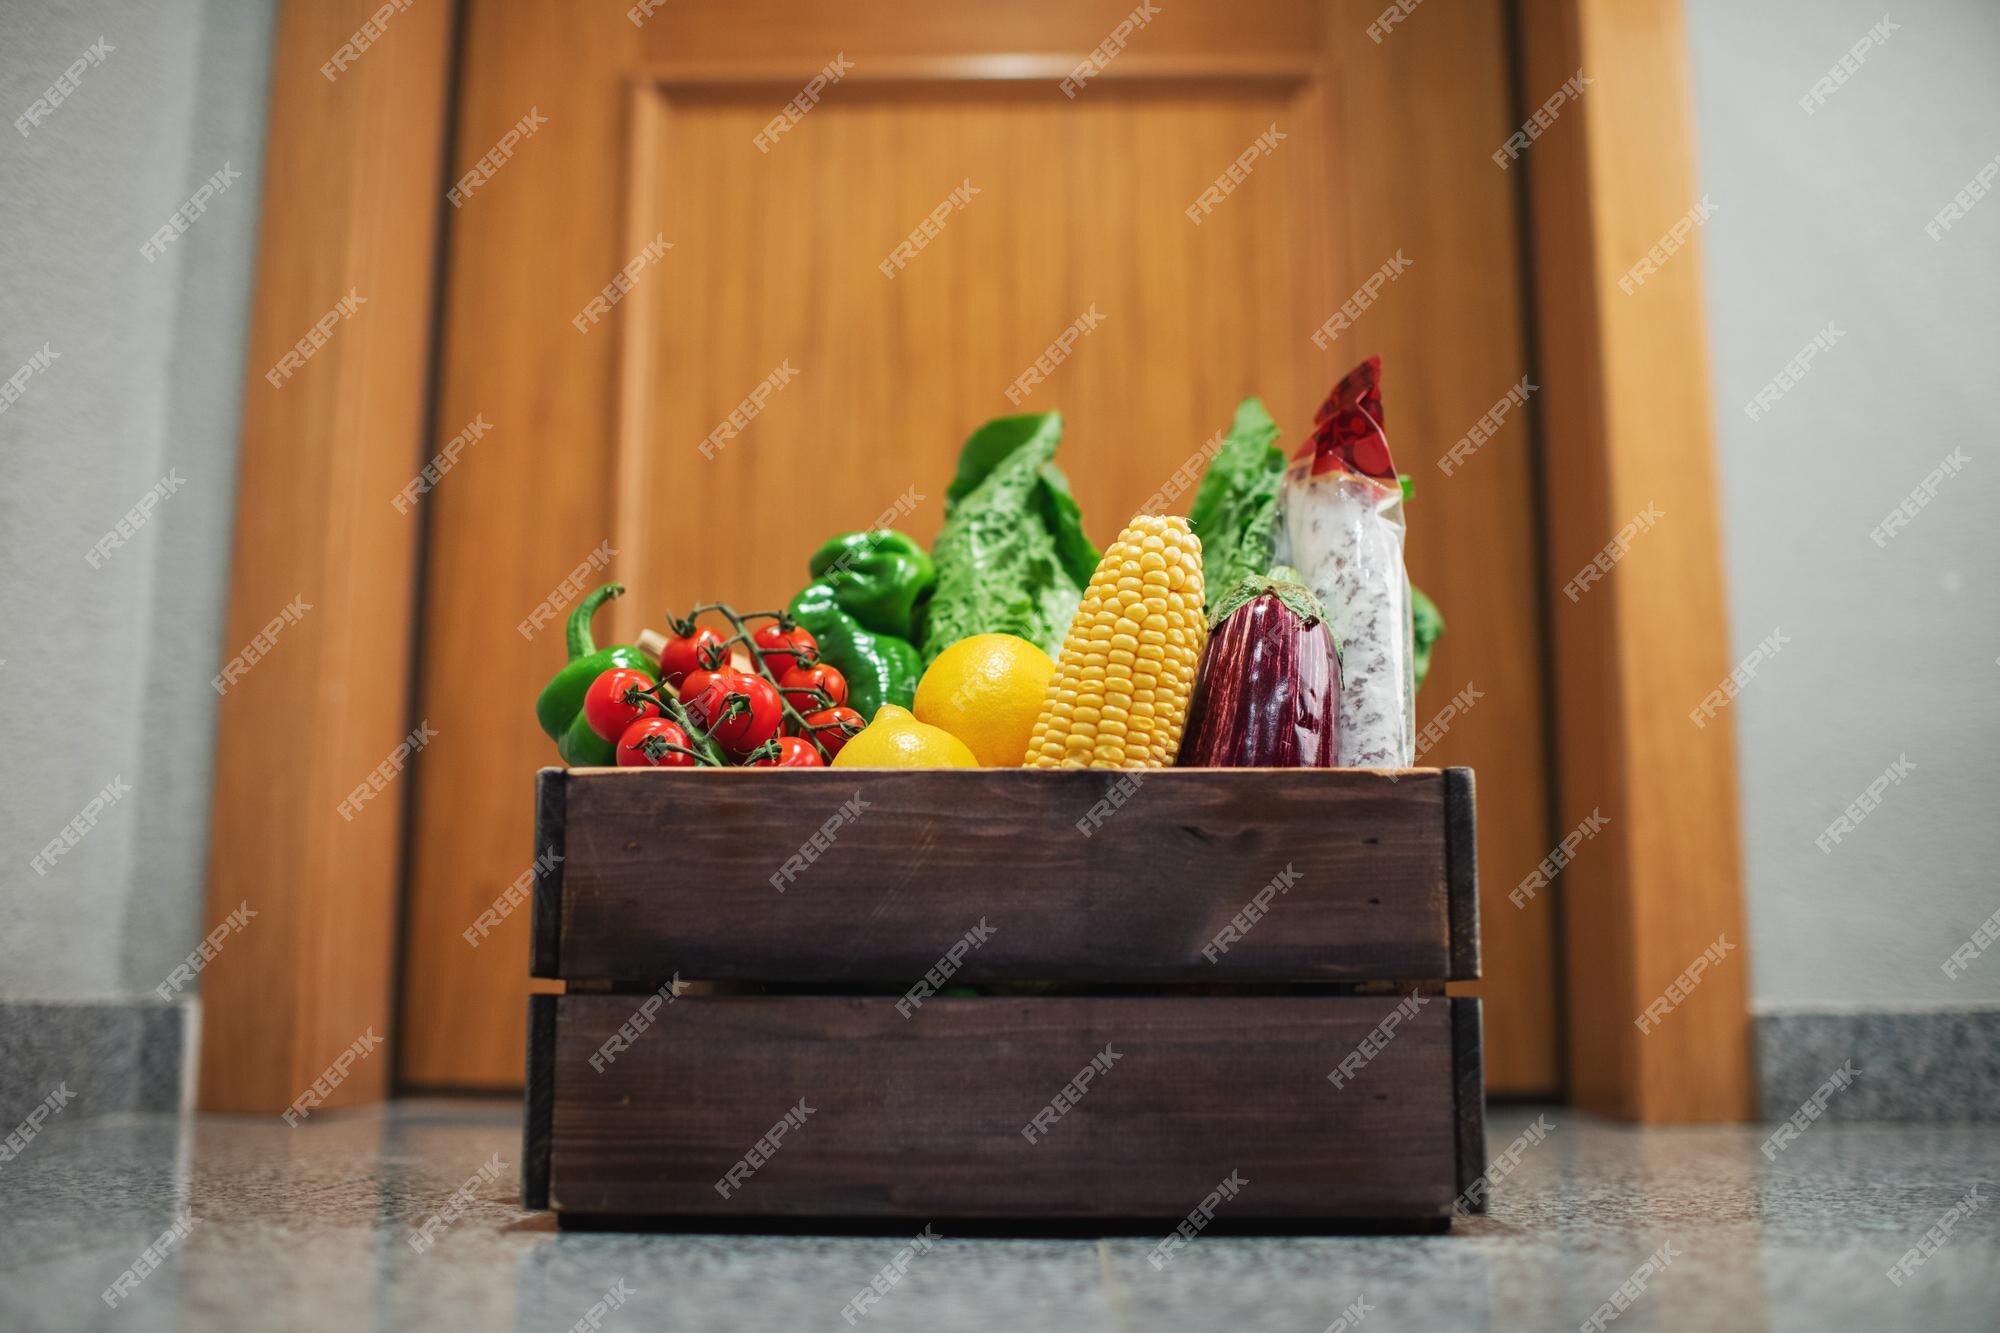 Boîte De Courses Alimentaires à La Porte De La Maison Ou De L'appartement  Livraison De Légumes Et De Fruits Pendant La Quarantaine Et  L'auto-isolement